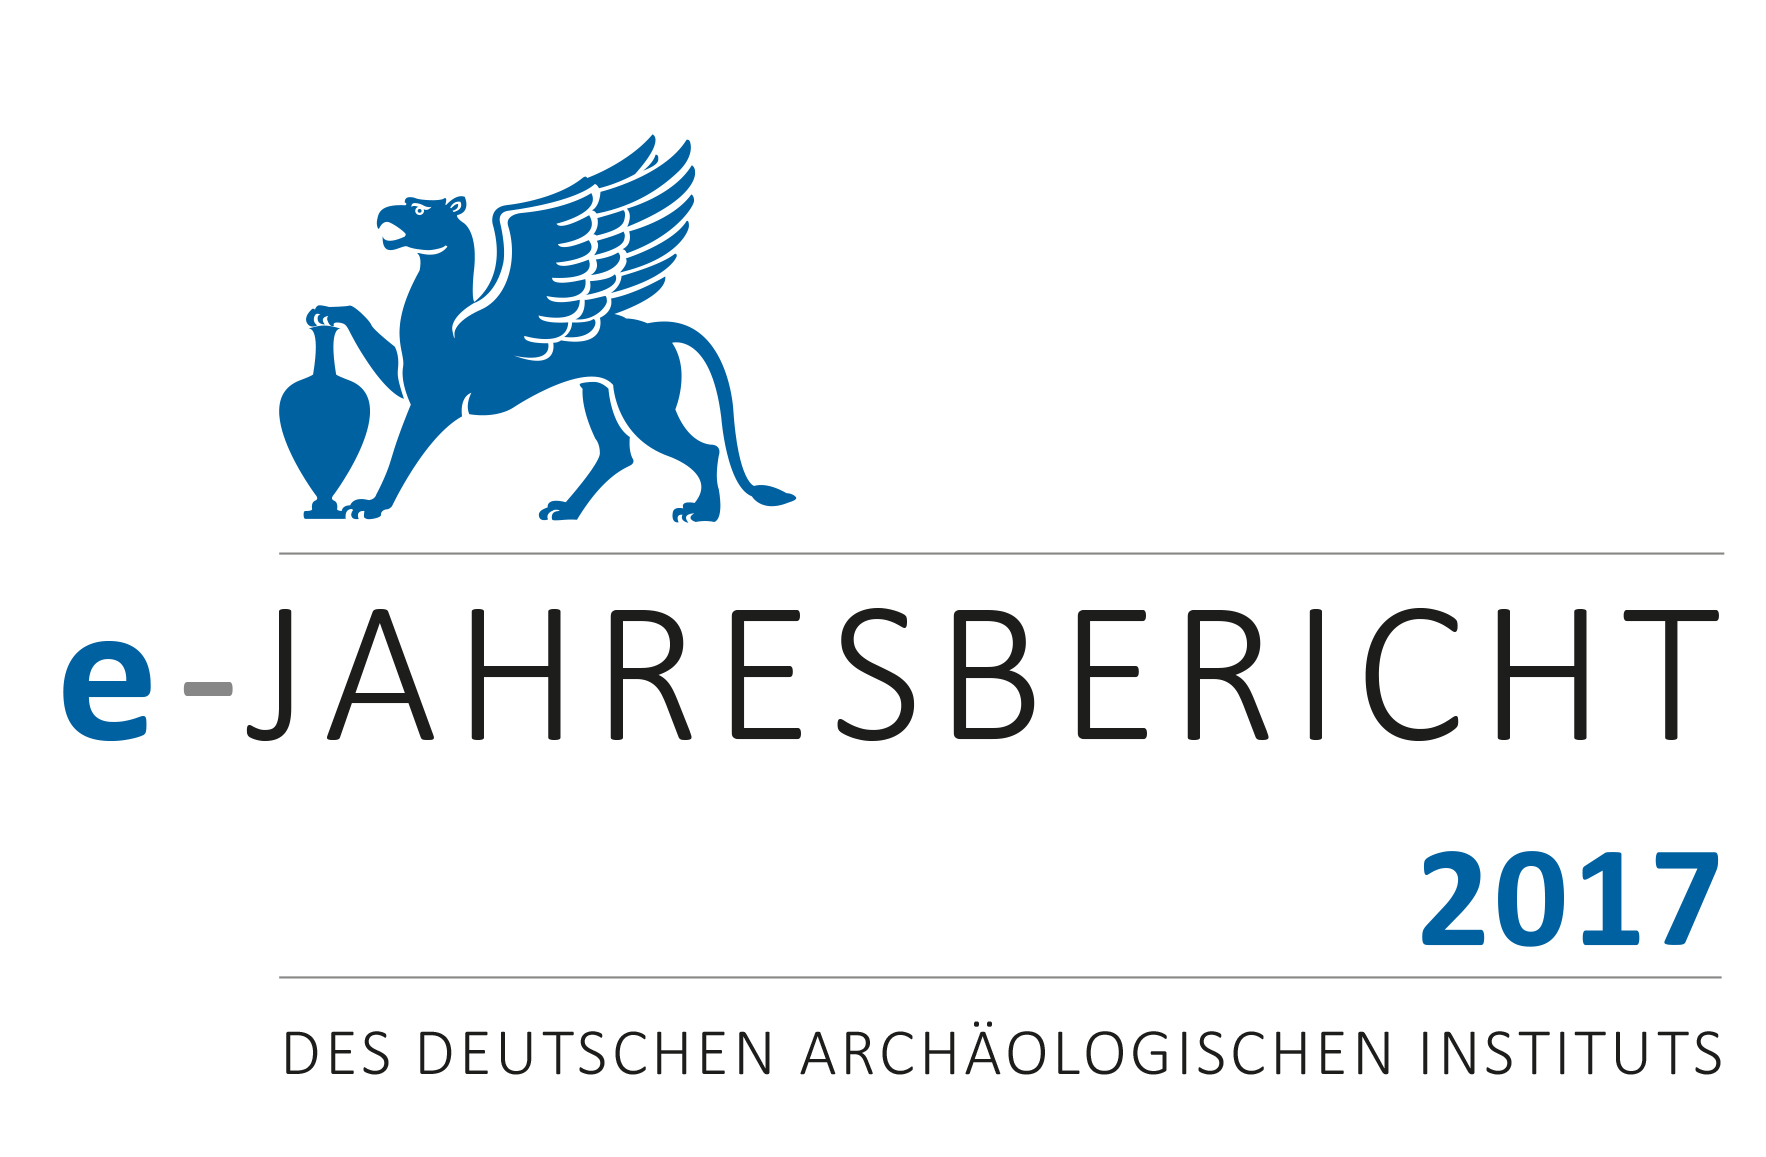 					Ansehen e-Jahresbericht 2017 des Deutschen Archäologischen Instituts
				